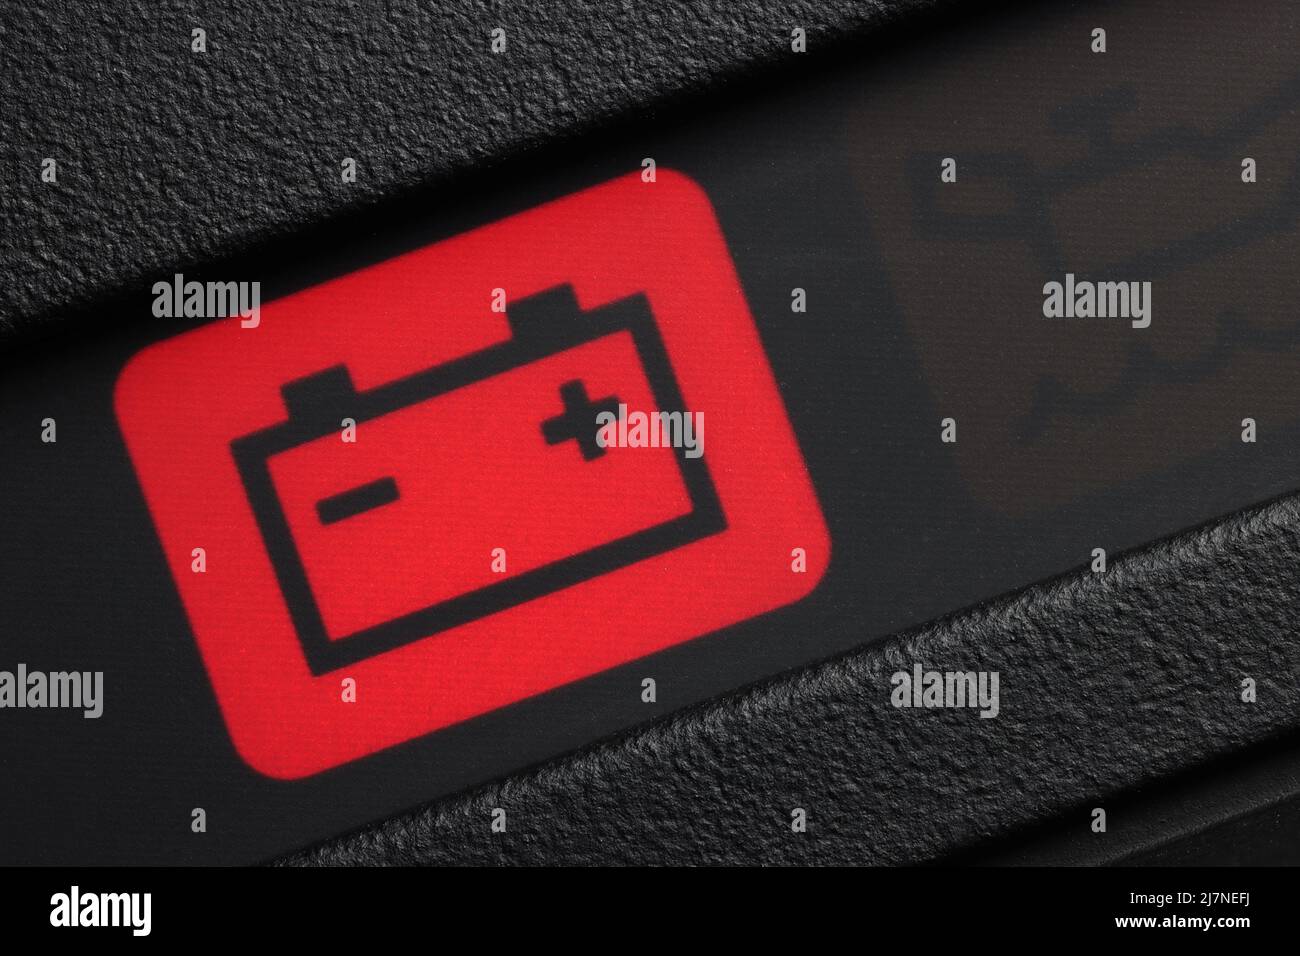 battery warning light in car dashboard Stock Photo